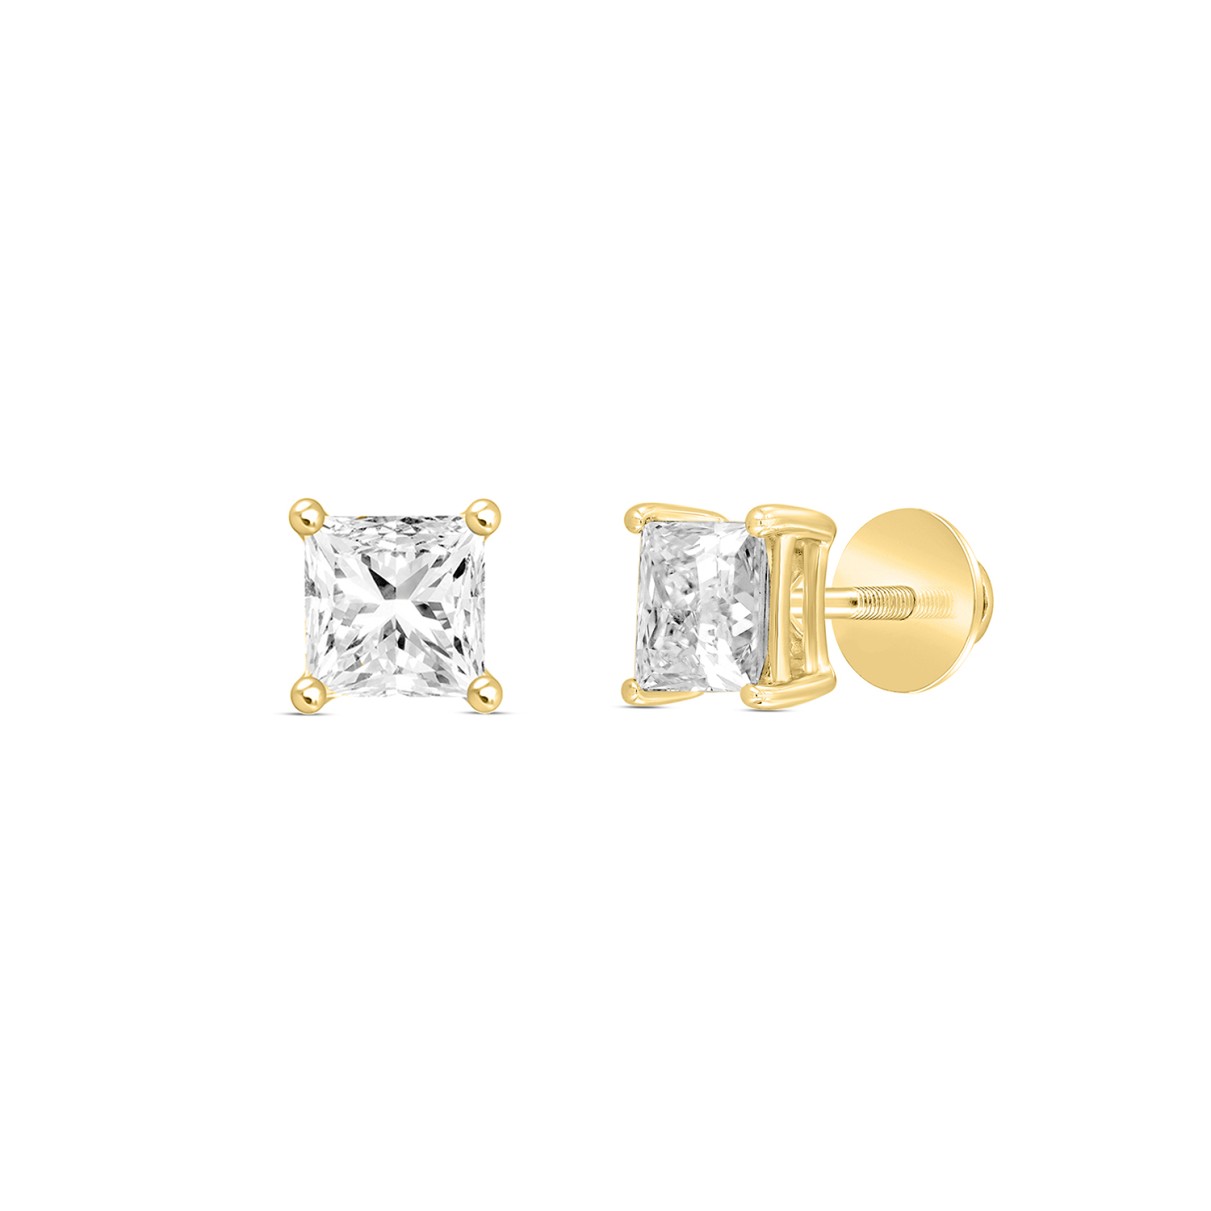 LADIES SOLITAIRE EARRINGS 1/2CT PRINCESS DIAMOND 14K YELLOW GOLD (CENTER STONE PRINCESS DIAMOND 1/4CT )